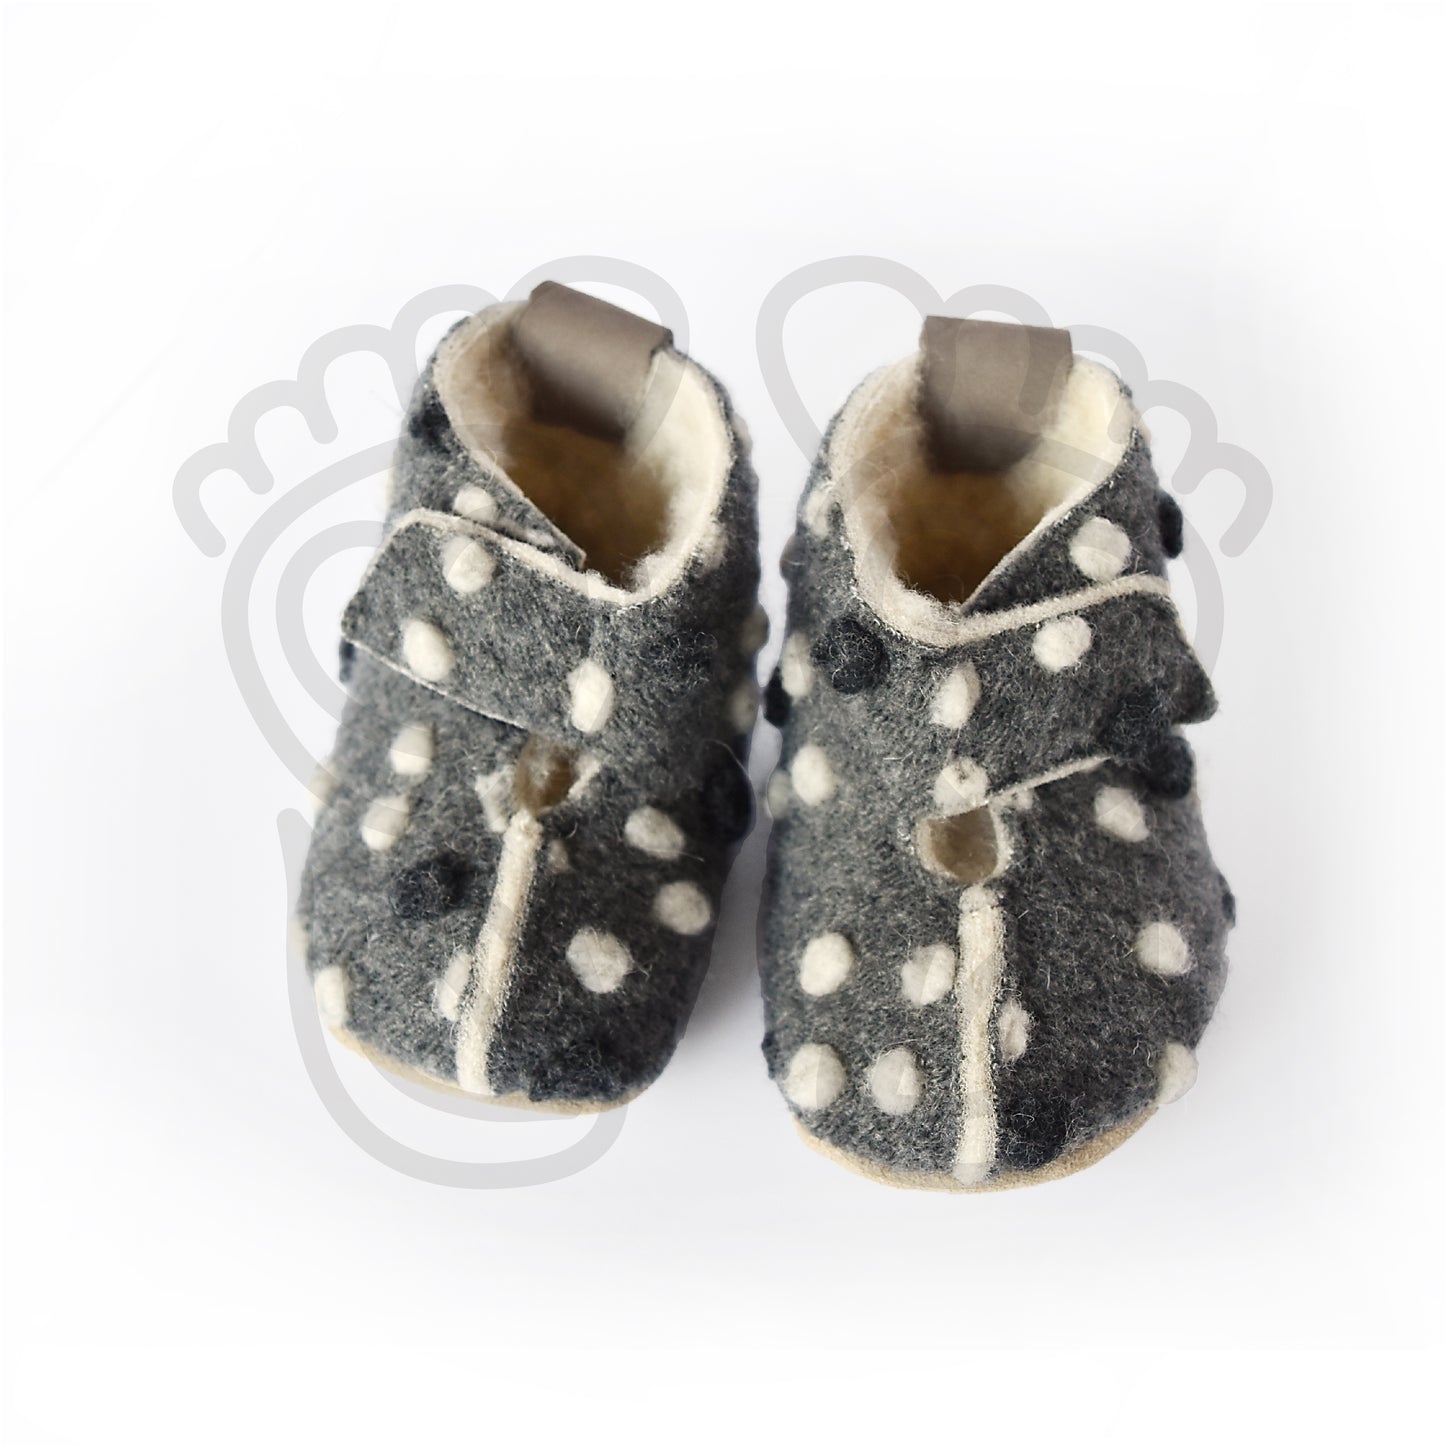 Omaking - Kaku -  zapatillas de casa barefoot de lana - gris oscuro